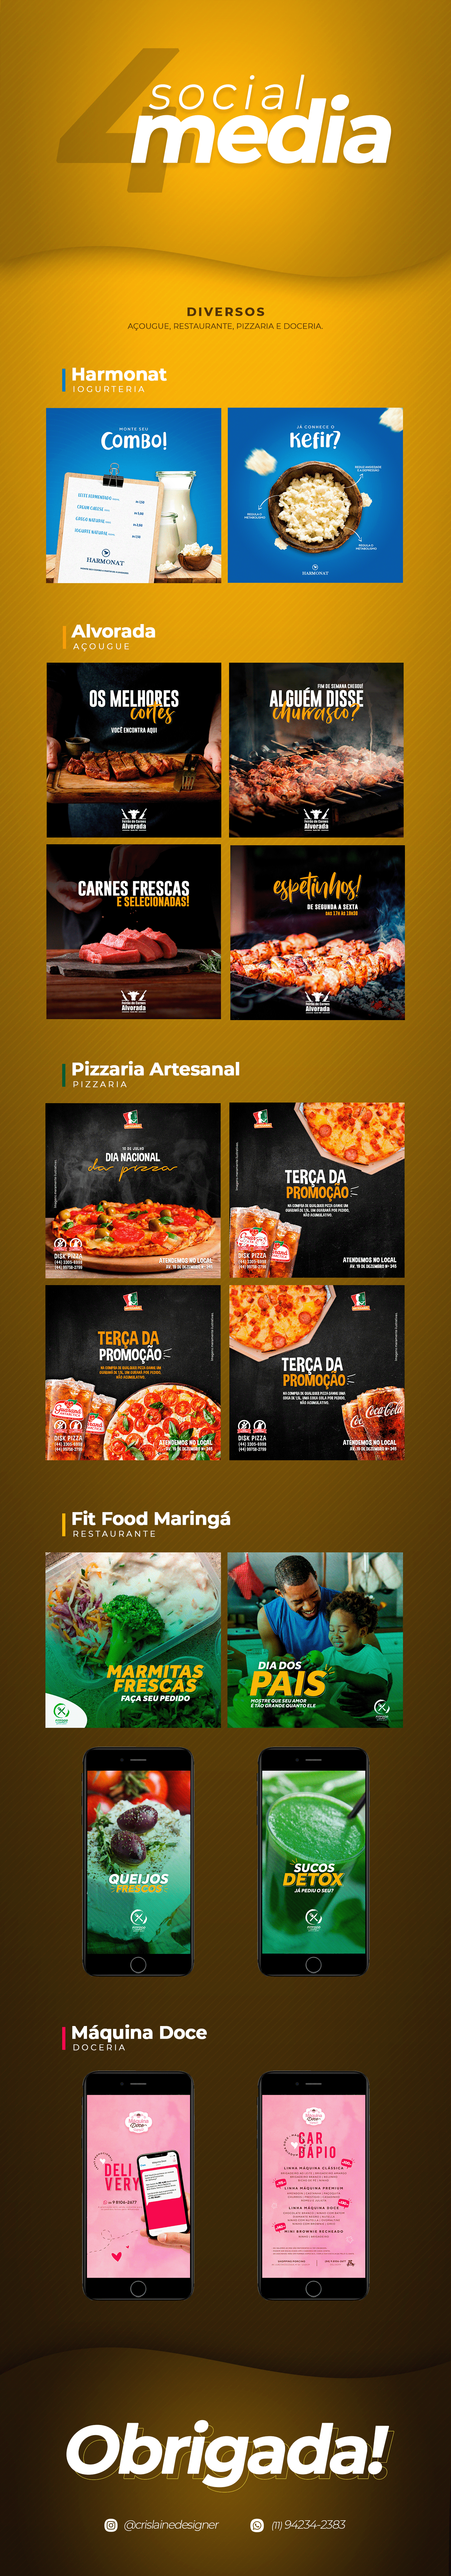 Socialmedia designgrafico publicidade marketing   redessociais digital Internet doceria restaurante pizzaria